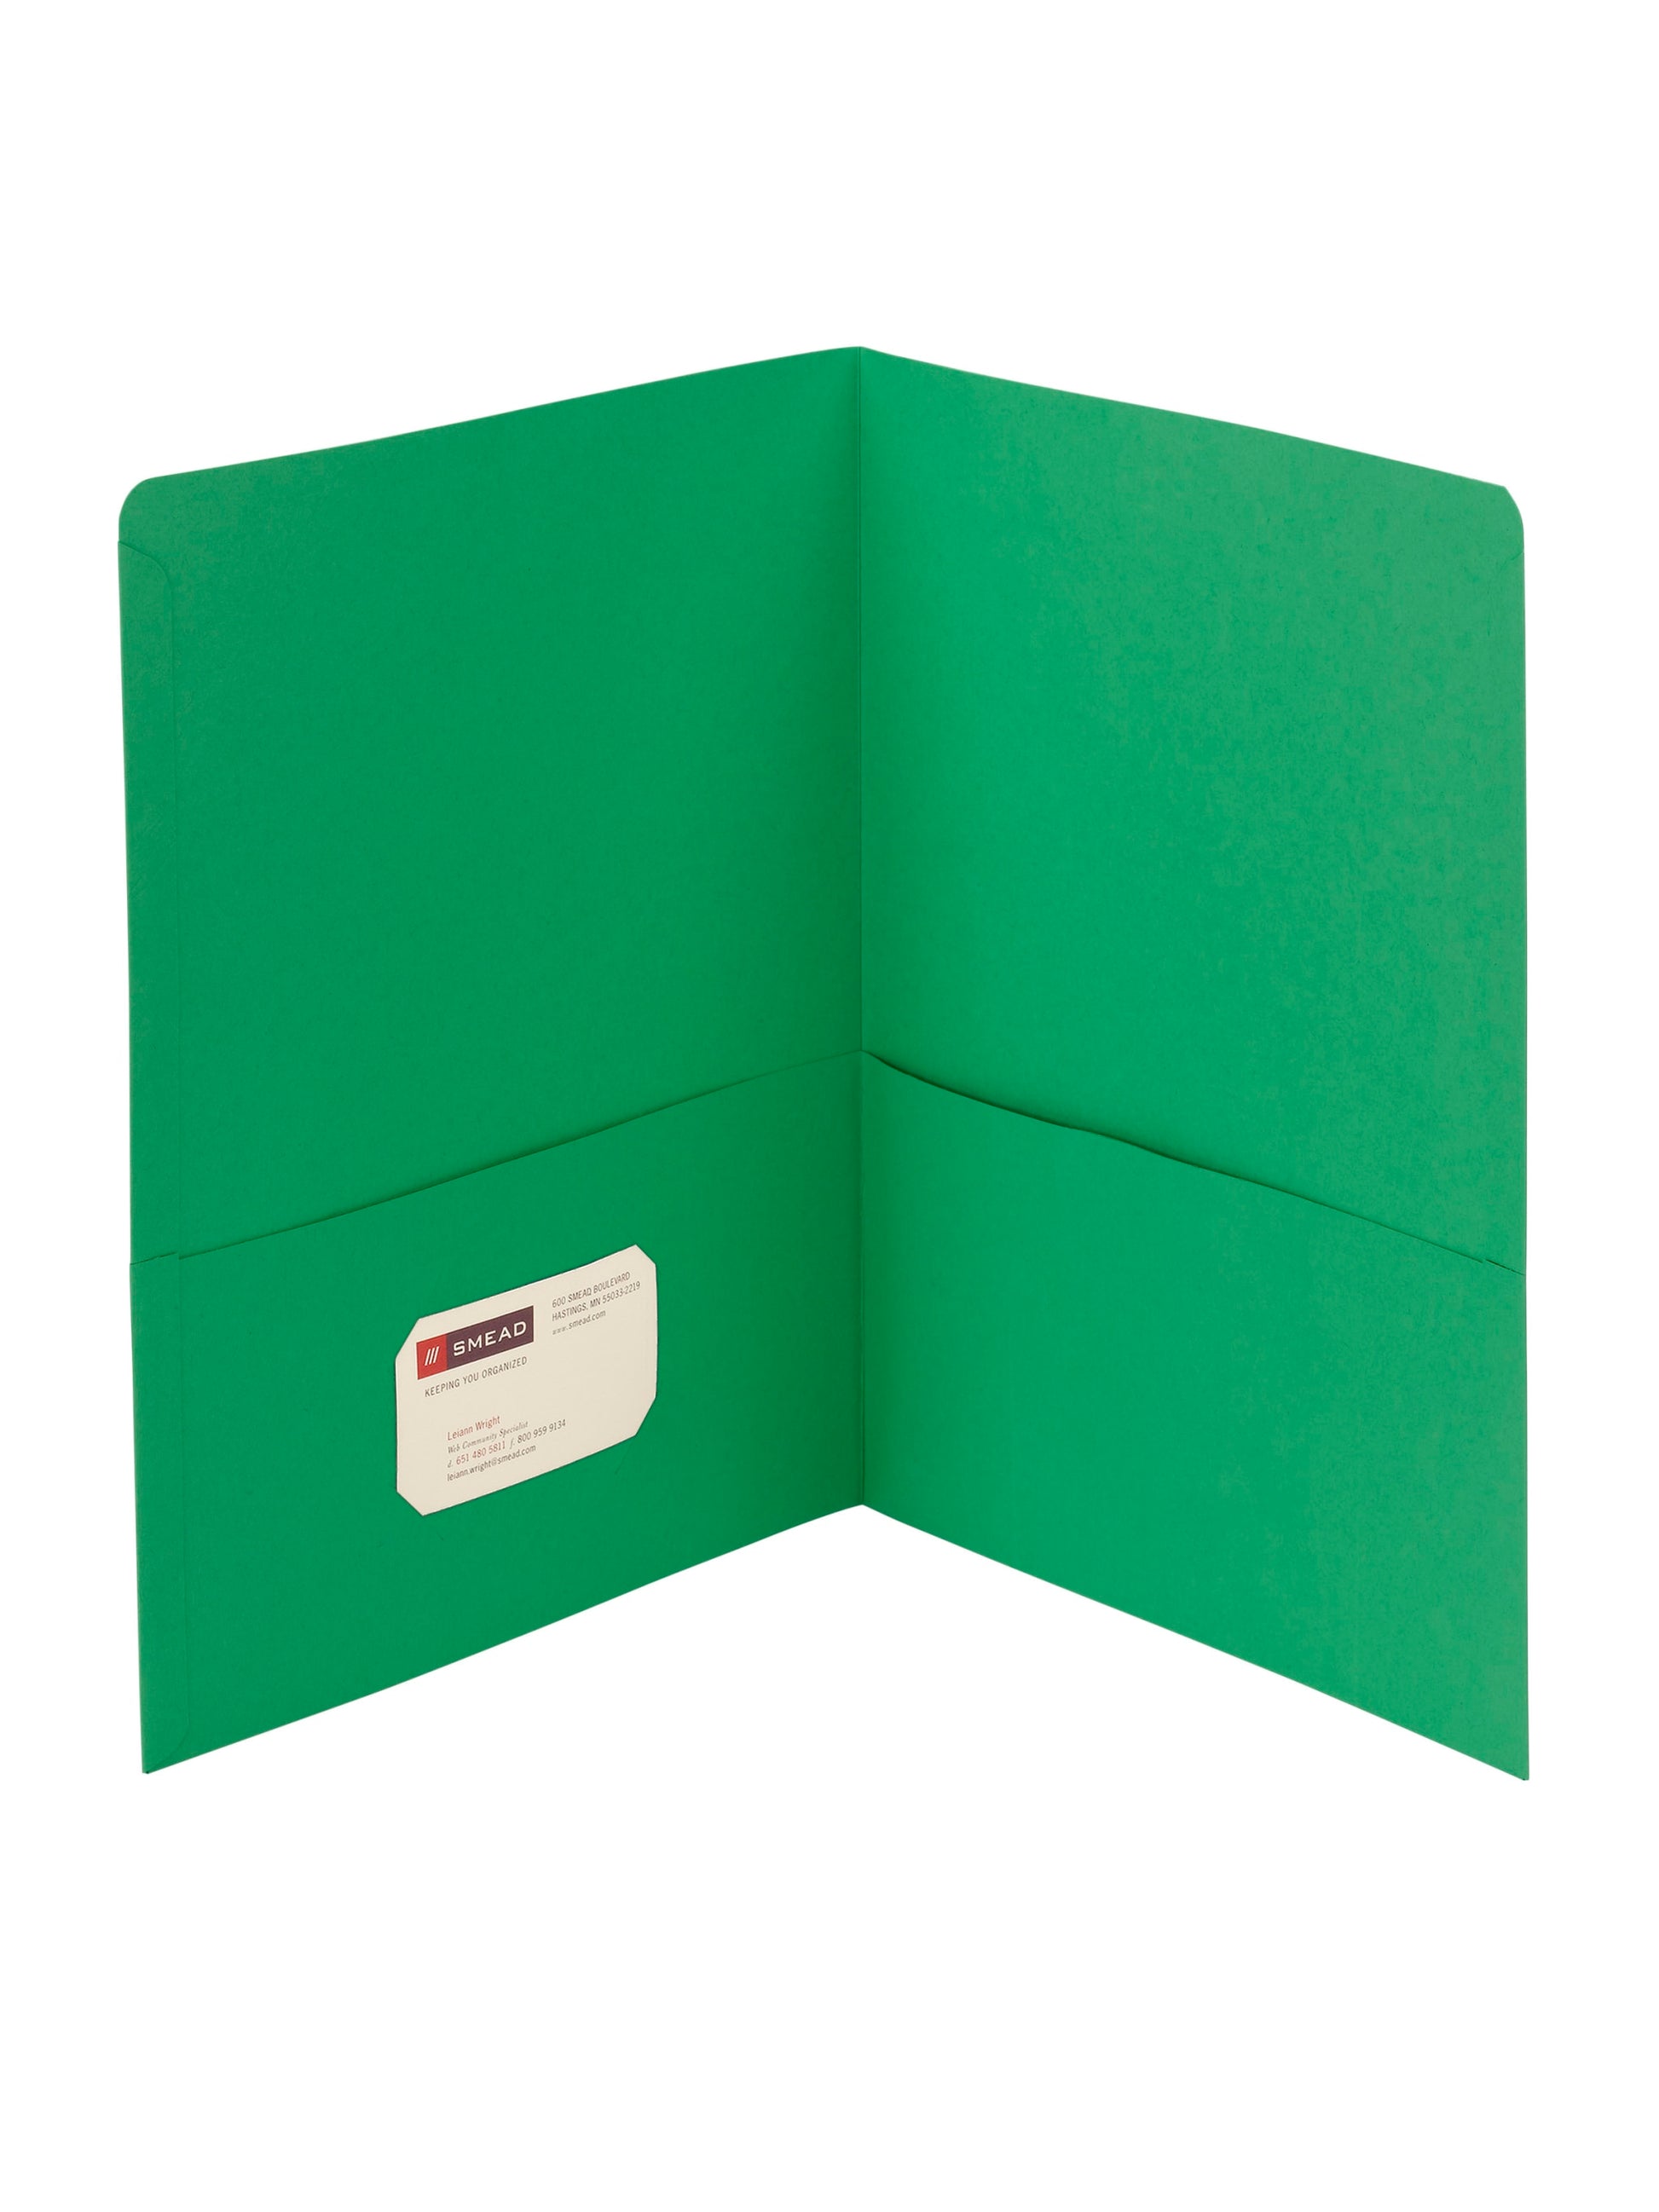 Standard Two-Pocket Folders, Green Color, Letter Size, Set of 0, 30086486878556